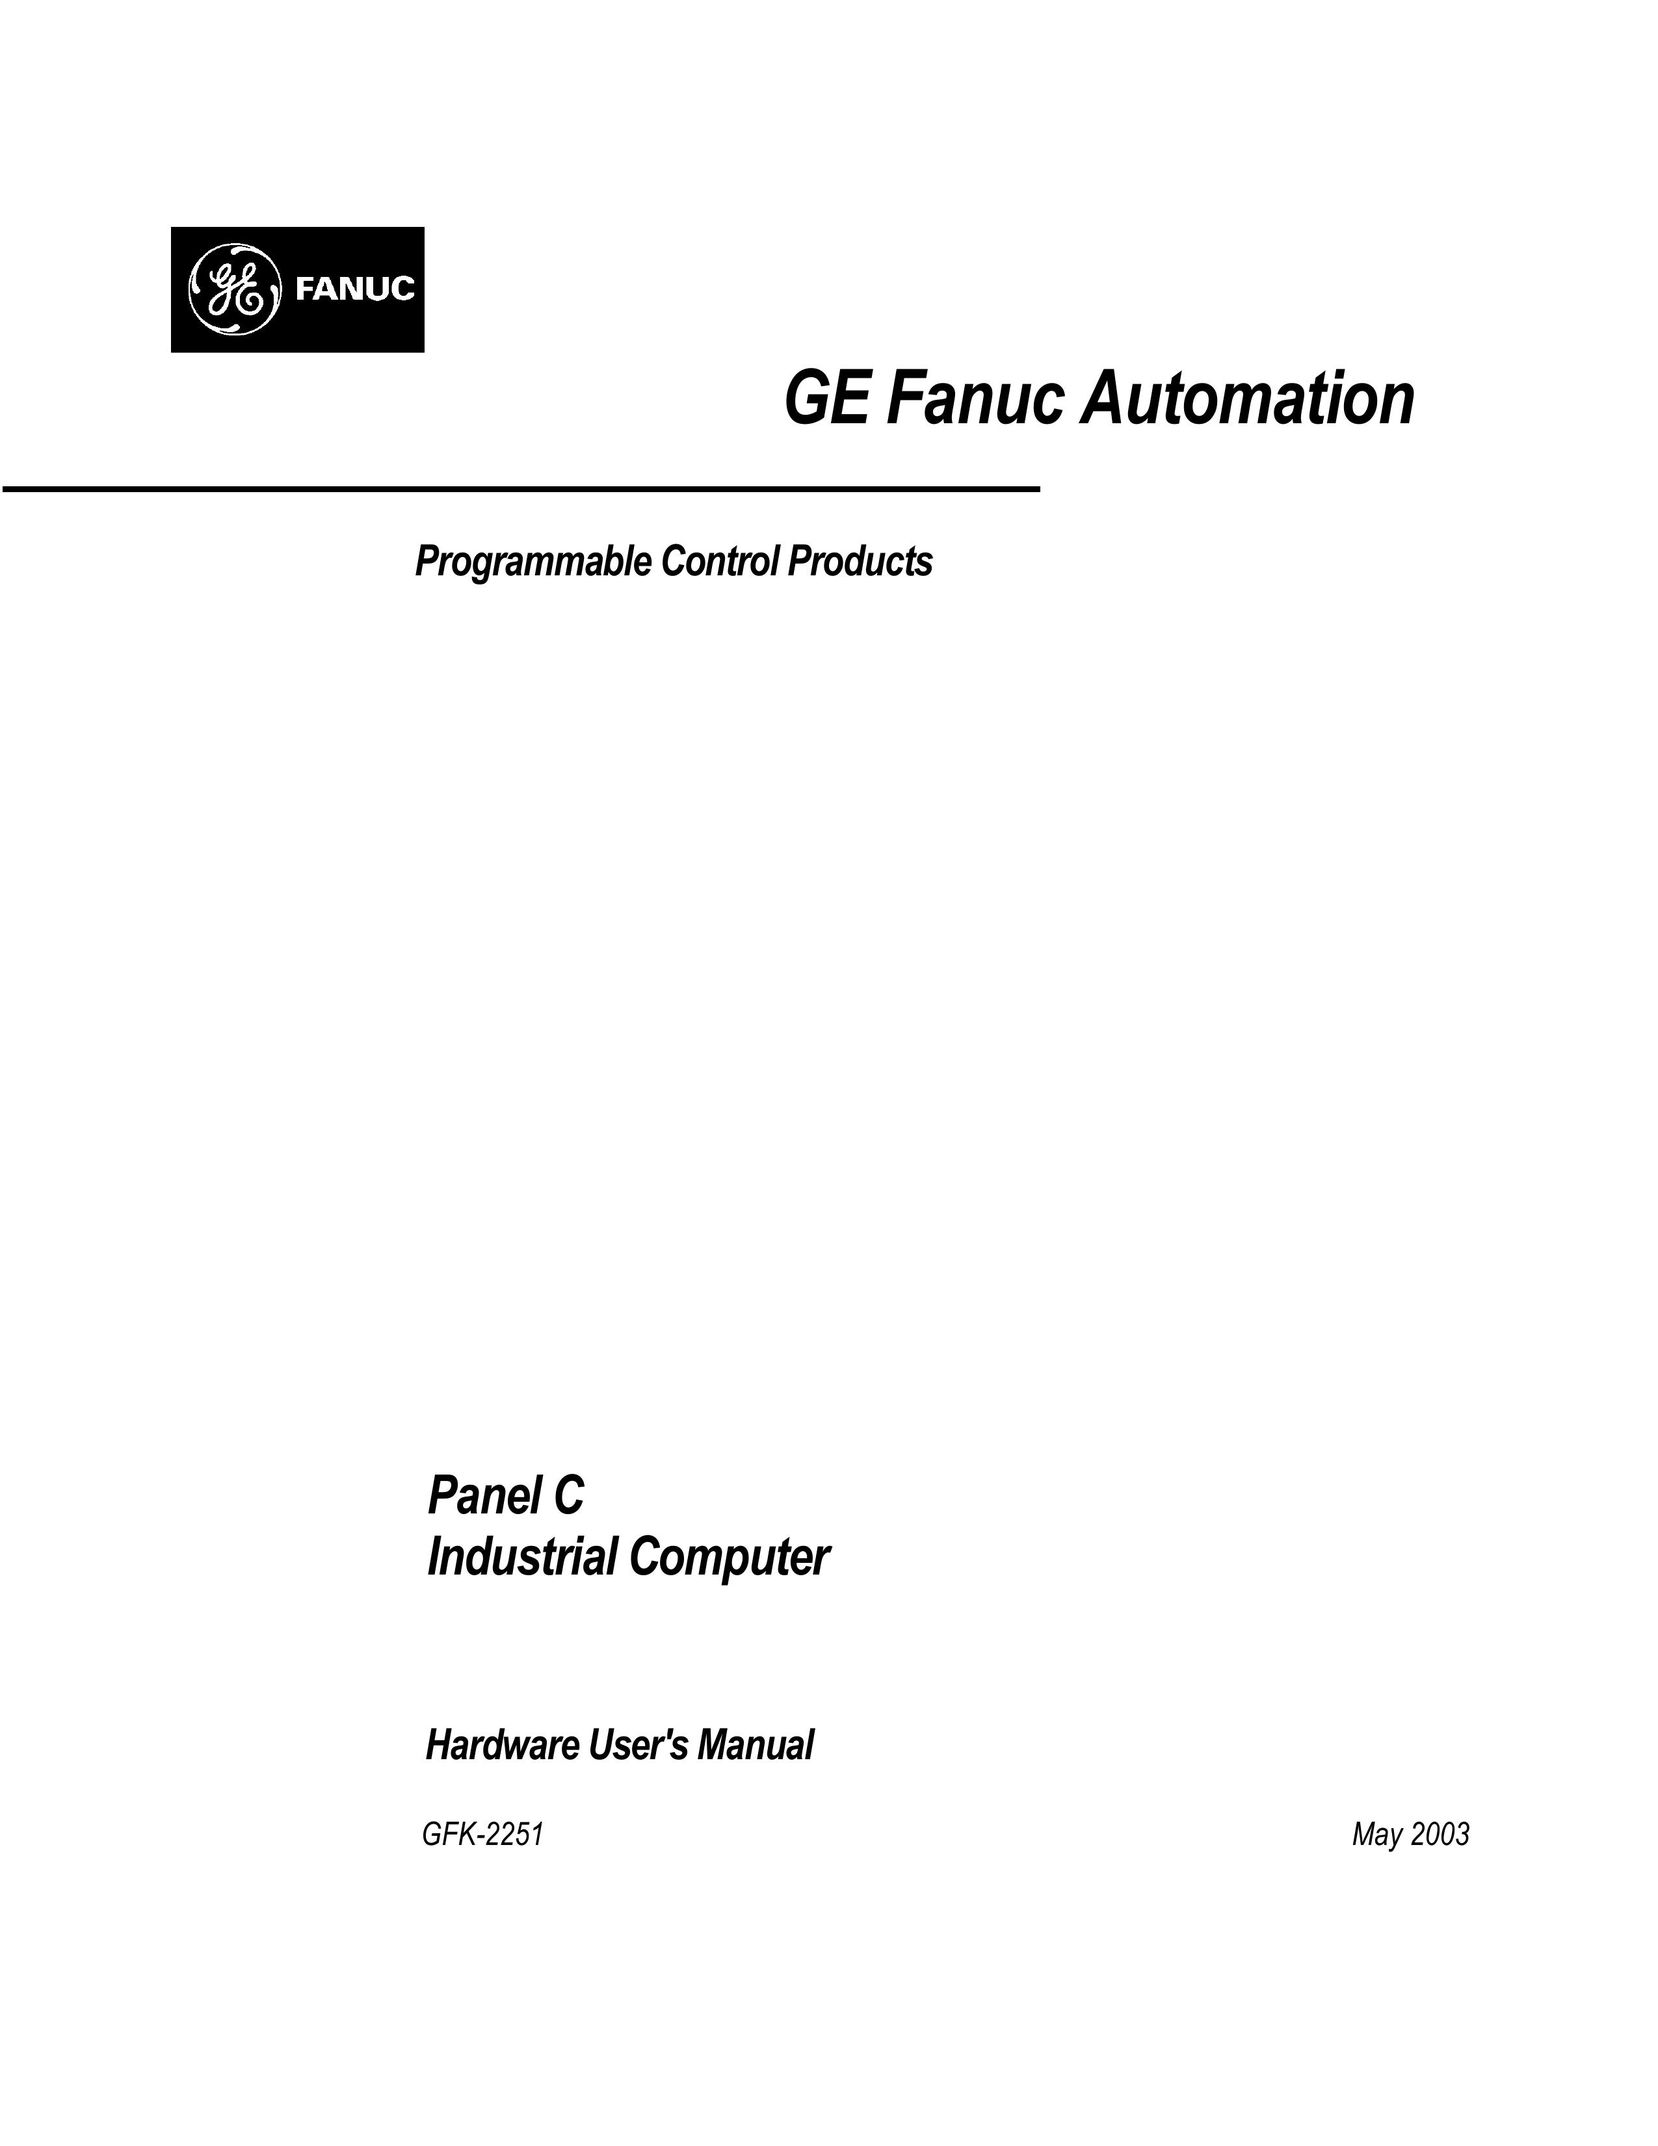 GE GFK-2251 Personal Computer User Manual